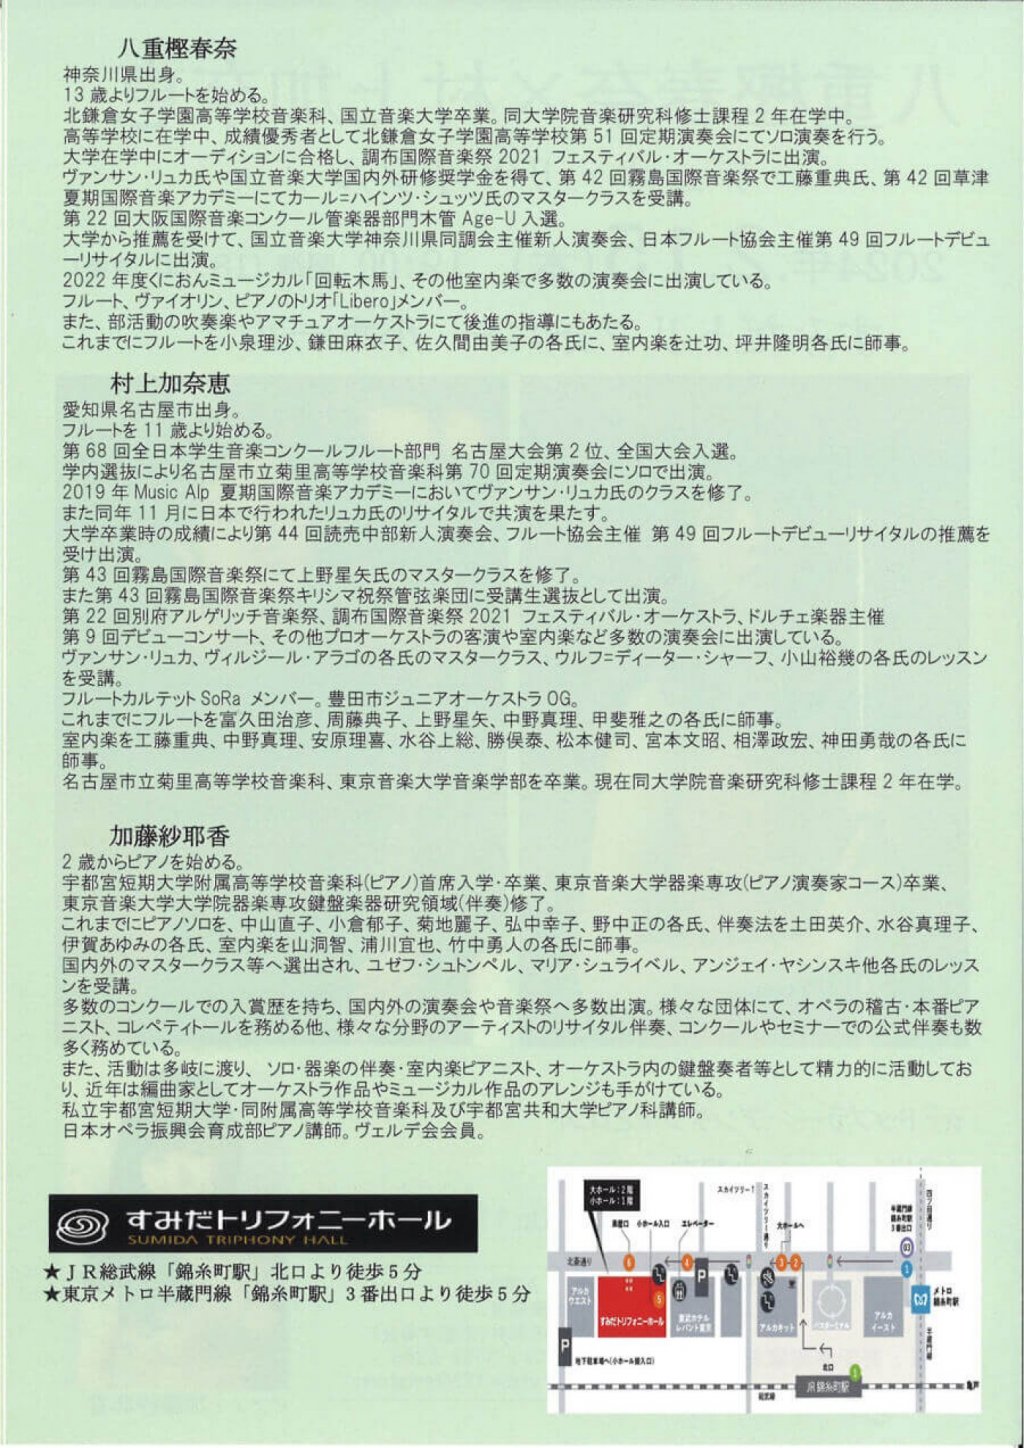 八重樫春奈×村上加奈恵 デュオ・リサイタル